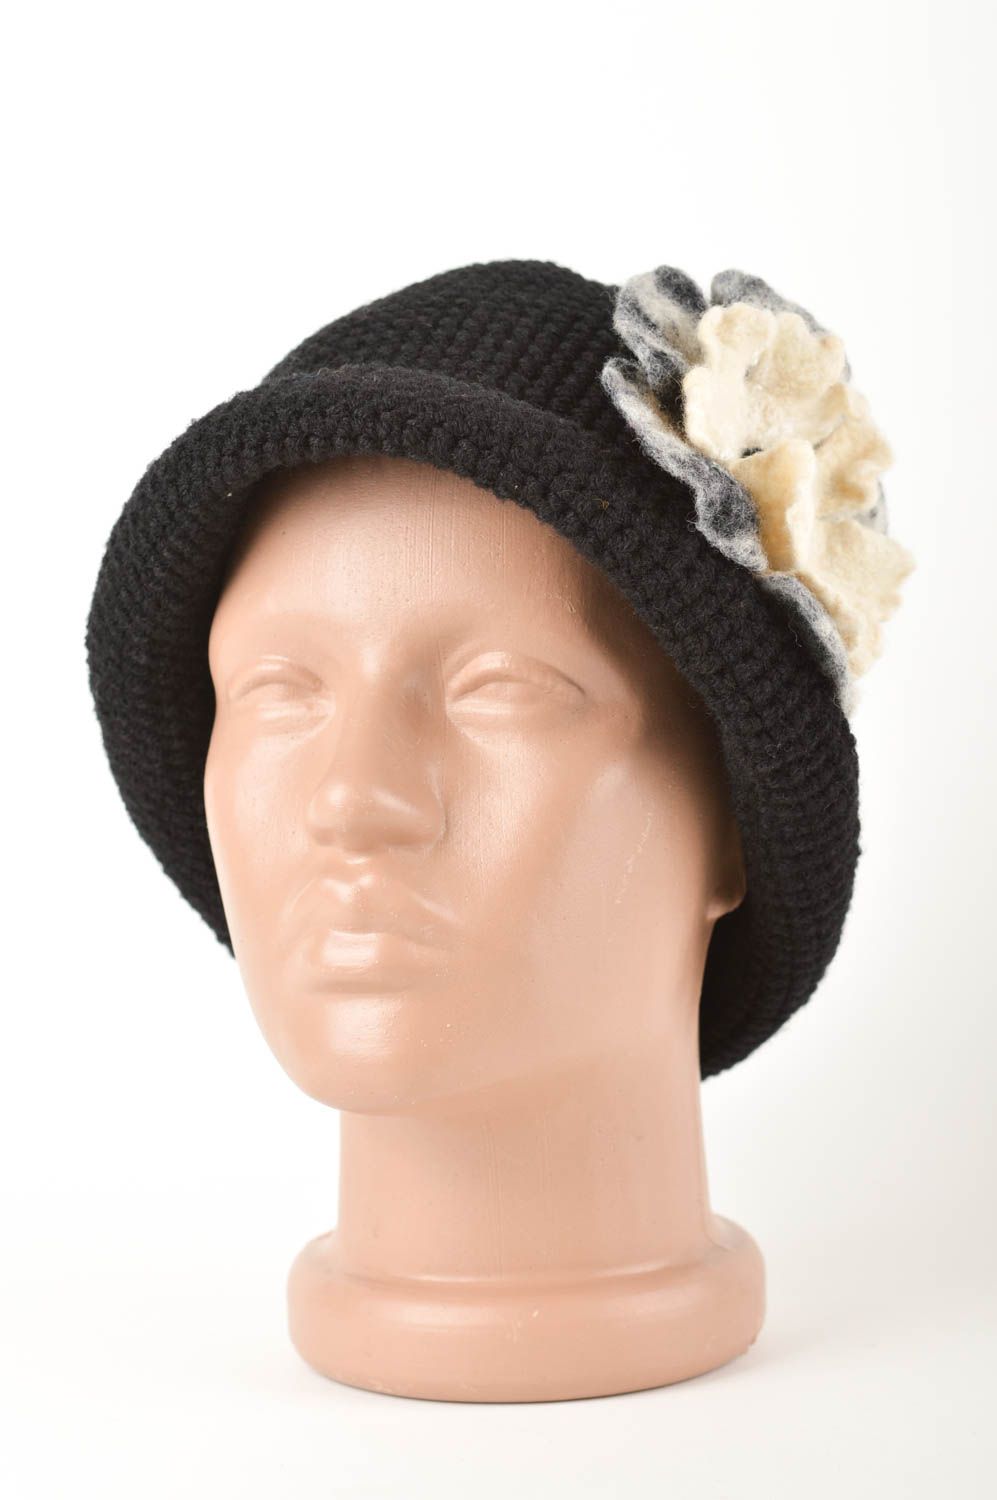 Chapeau chaud Bonnet tricot fait main Vêtement femme hiver noir laine naturelle photo 1